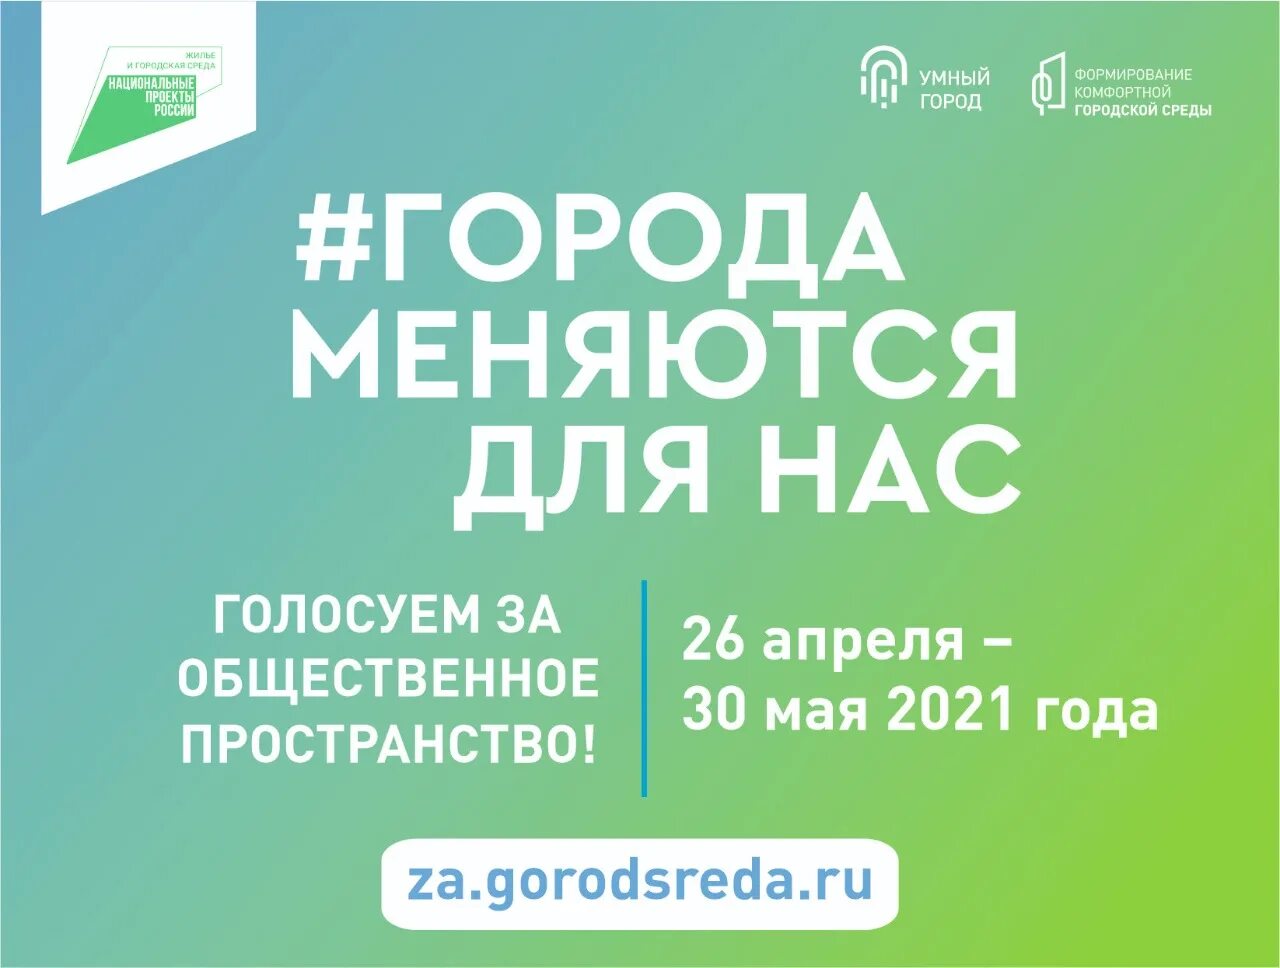 29 gorodsreda ru проголосовать. Формирование комфортной городской среды 2021. Городская среда голосование 2021. Формирование комфортной городской среды голосование. Голосование комфортная городская среда 2021.